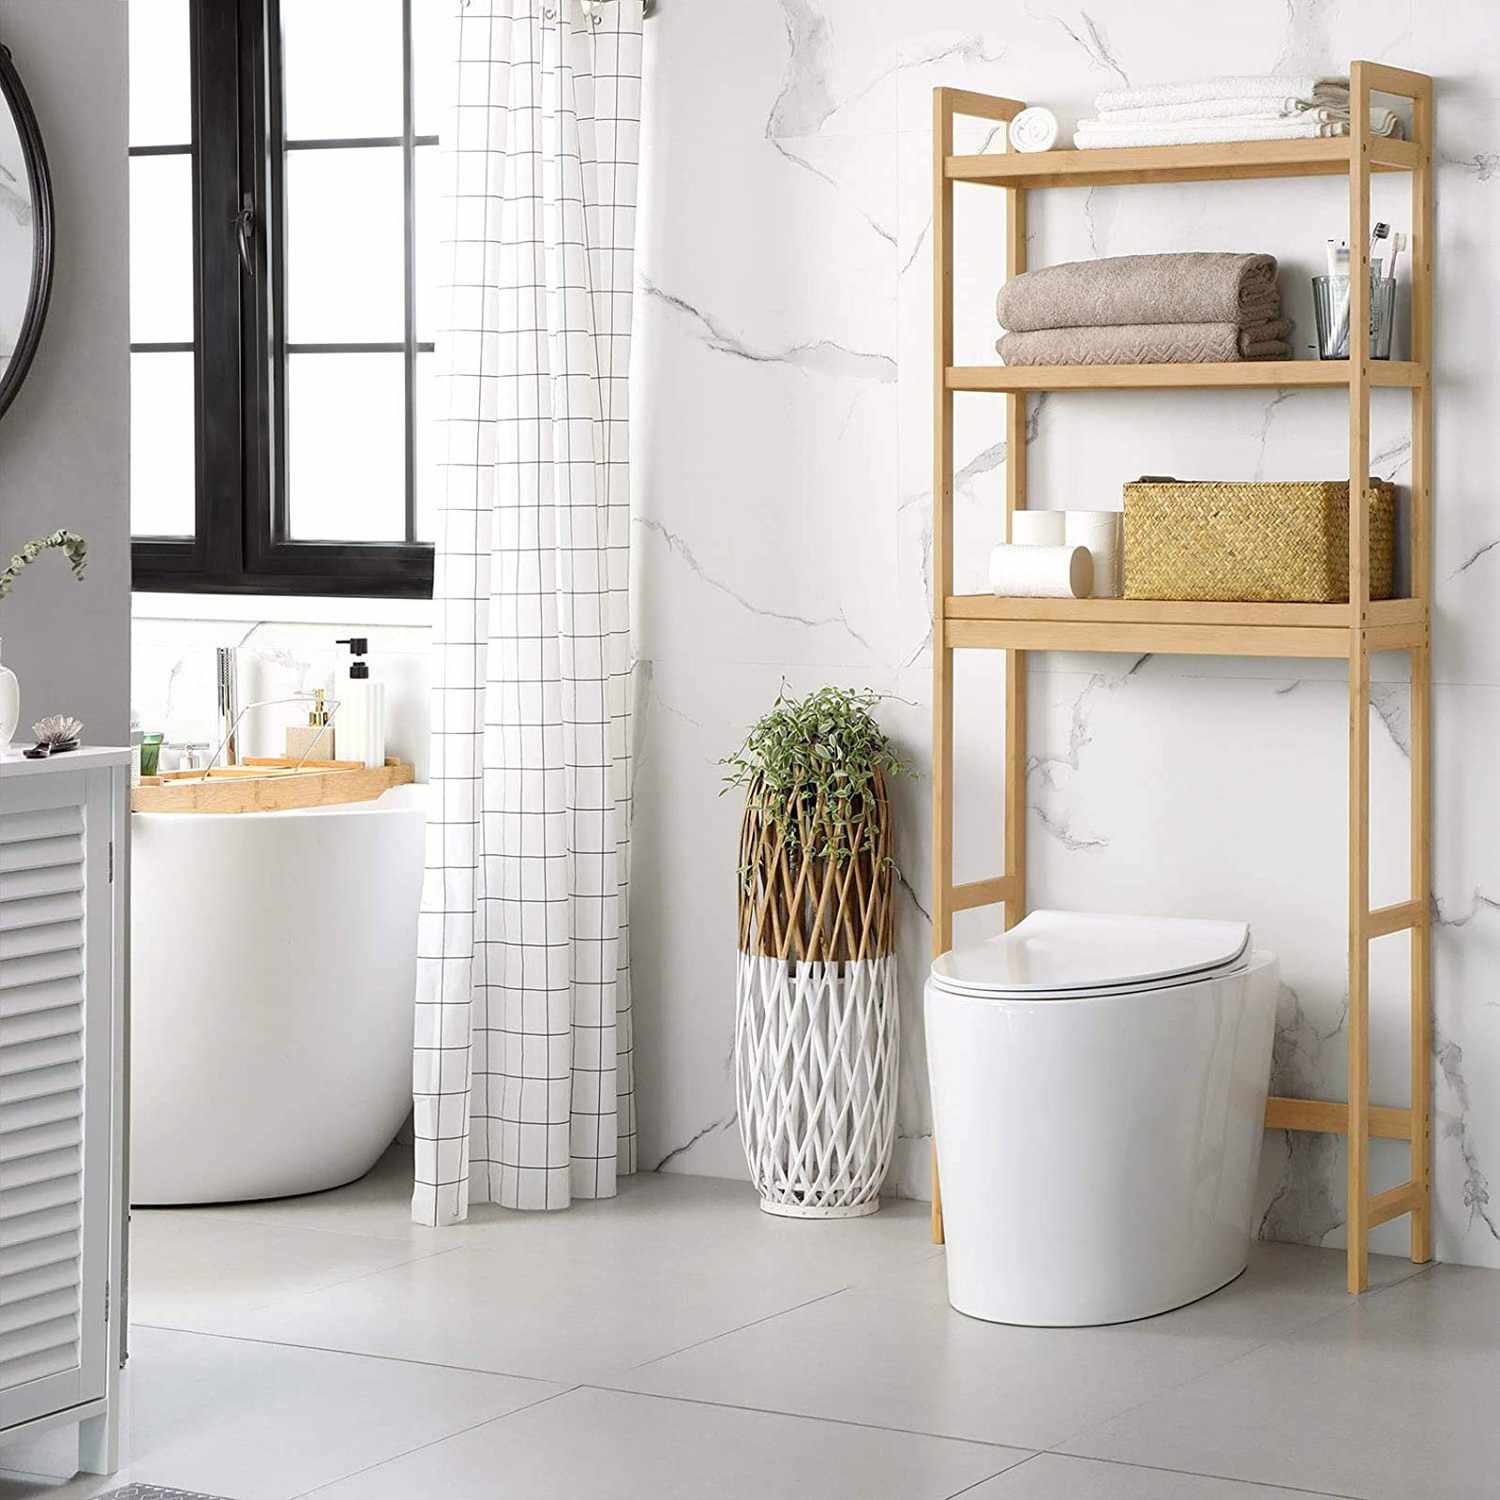 Shop the Best Over-the-Toilet Storage Ideas | Martha Stewart